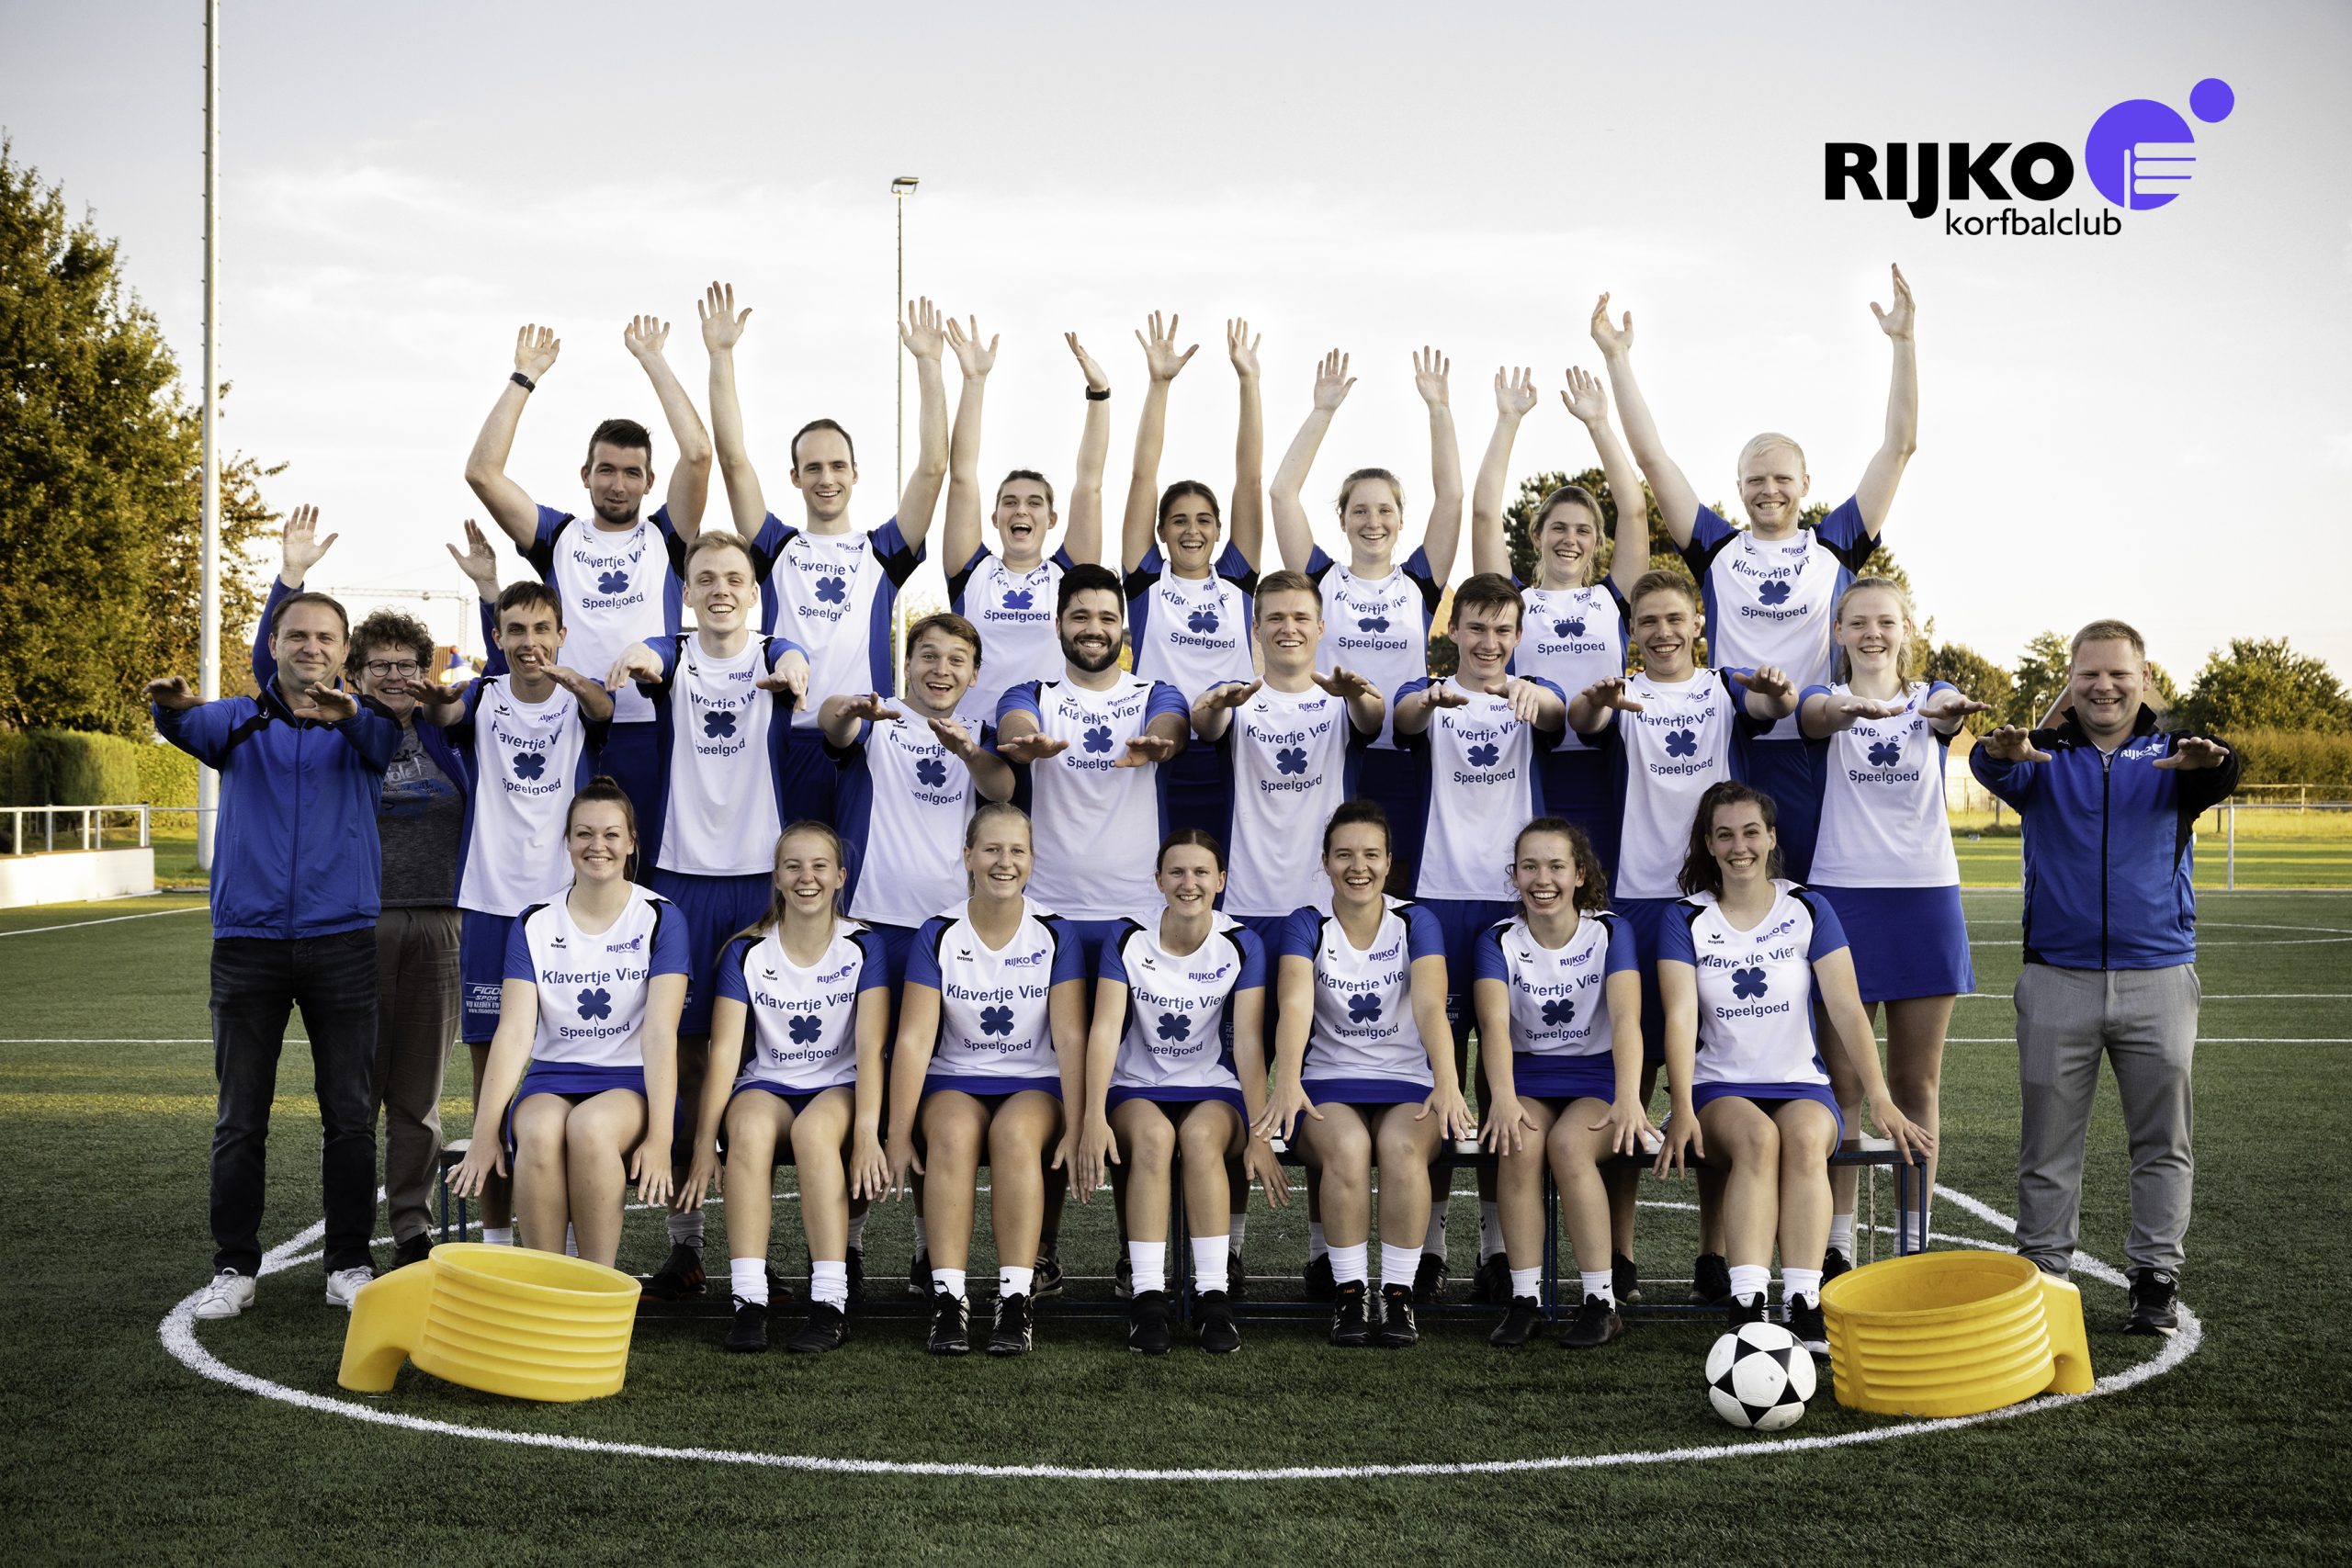 Korfbalclub Rijko Rijkevorsel promoveert voor de eerste keer naar Promoleague A!